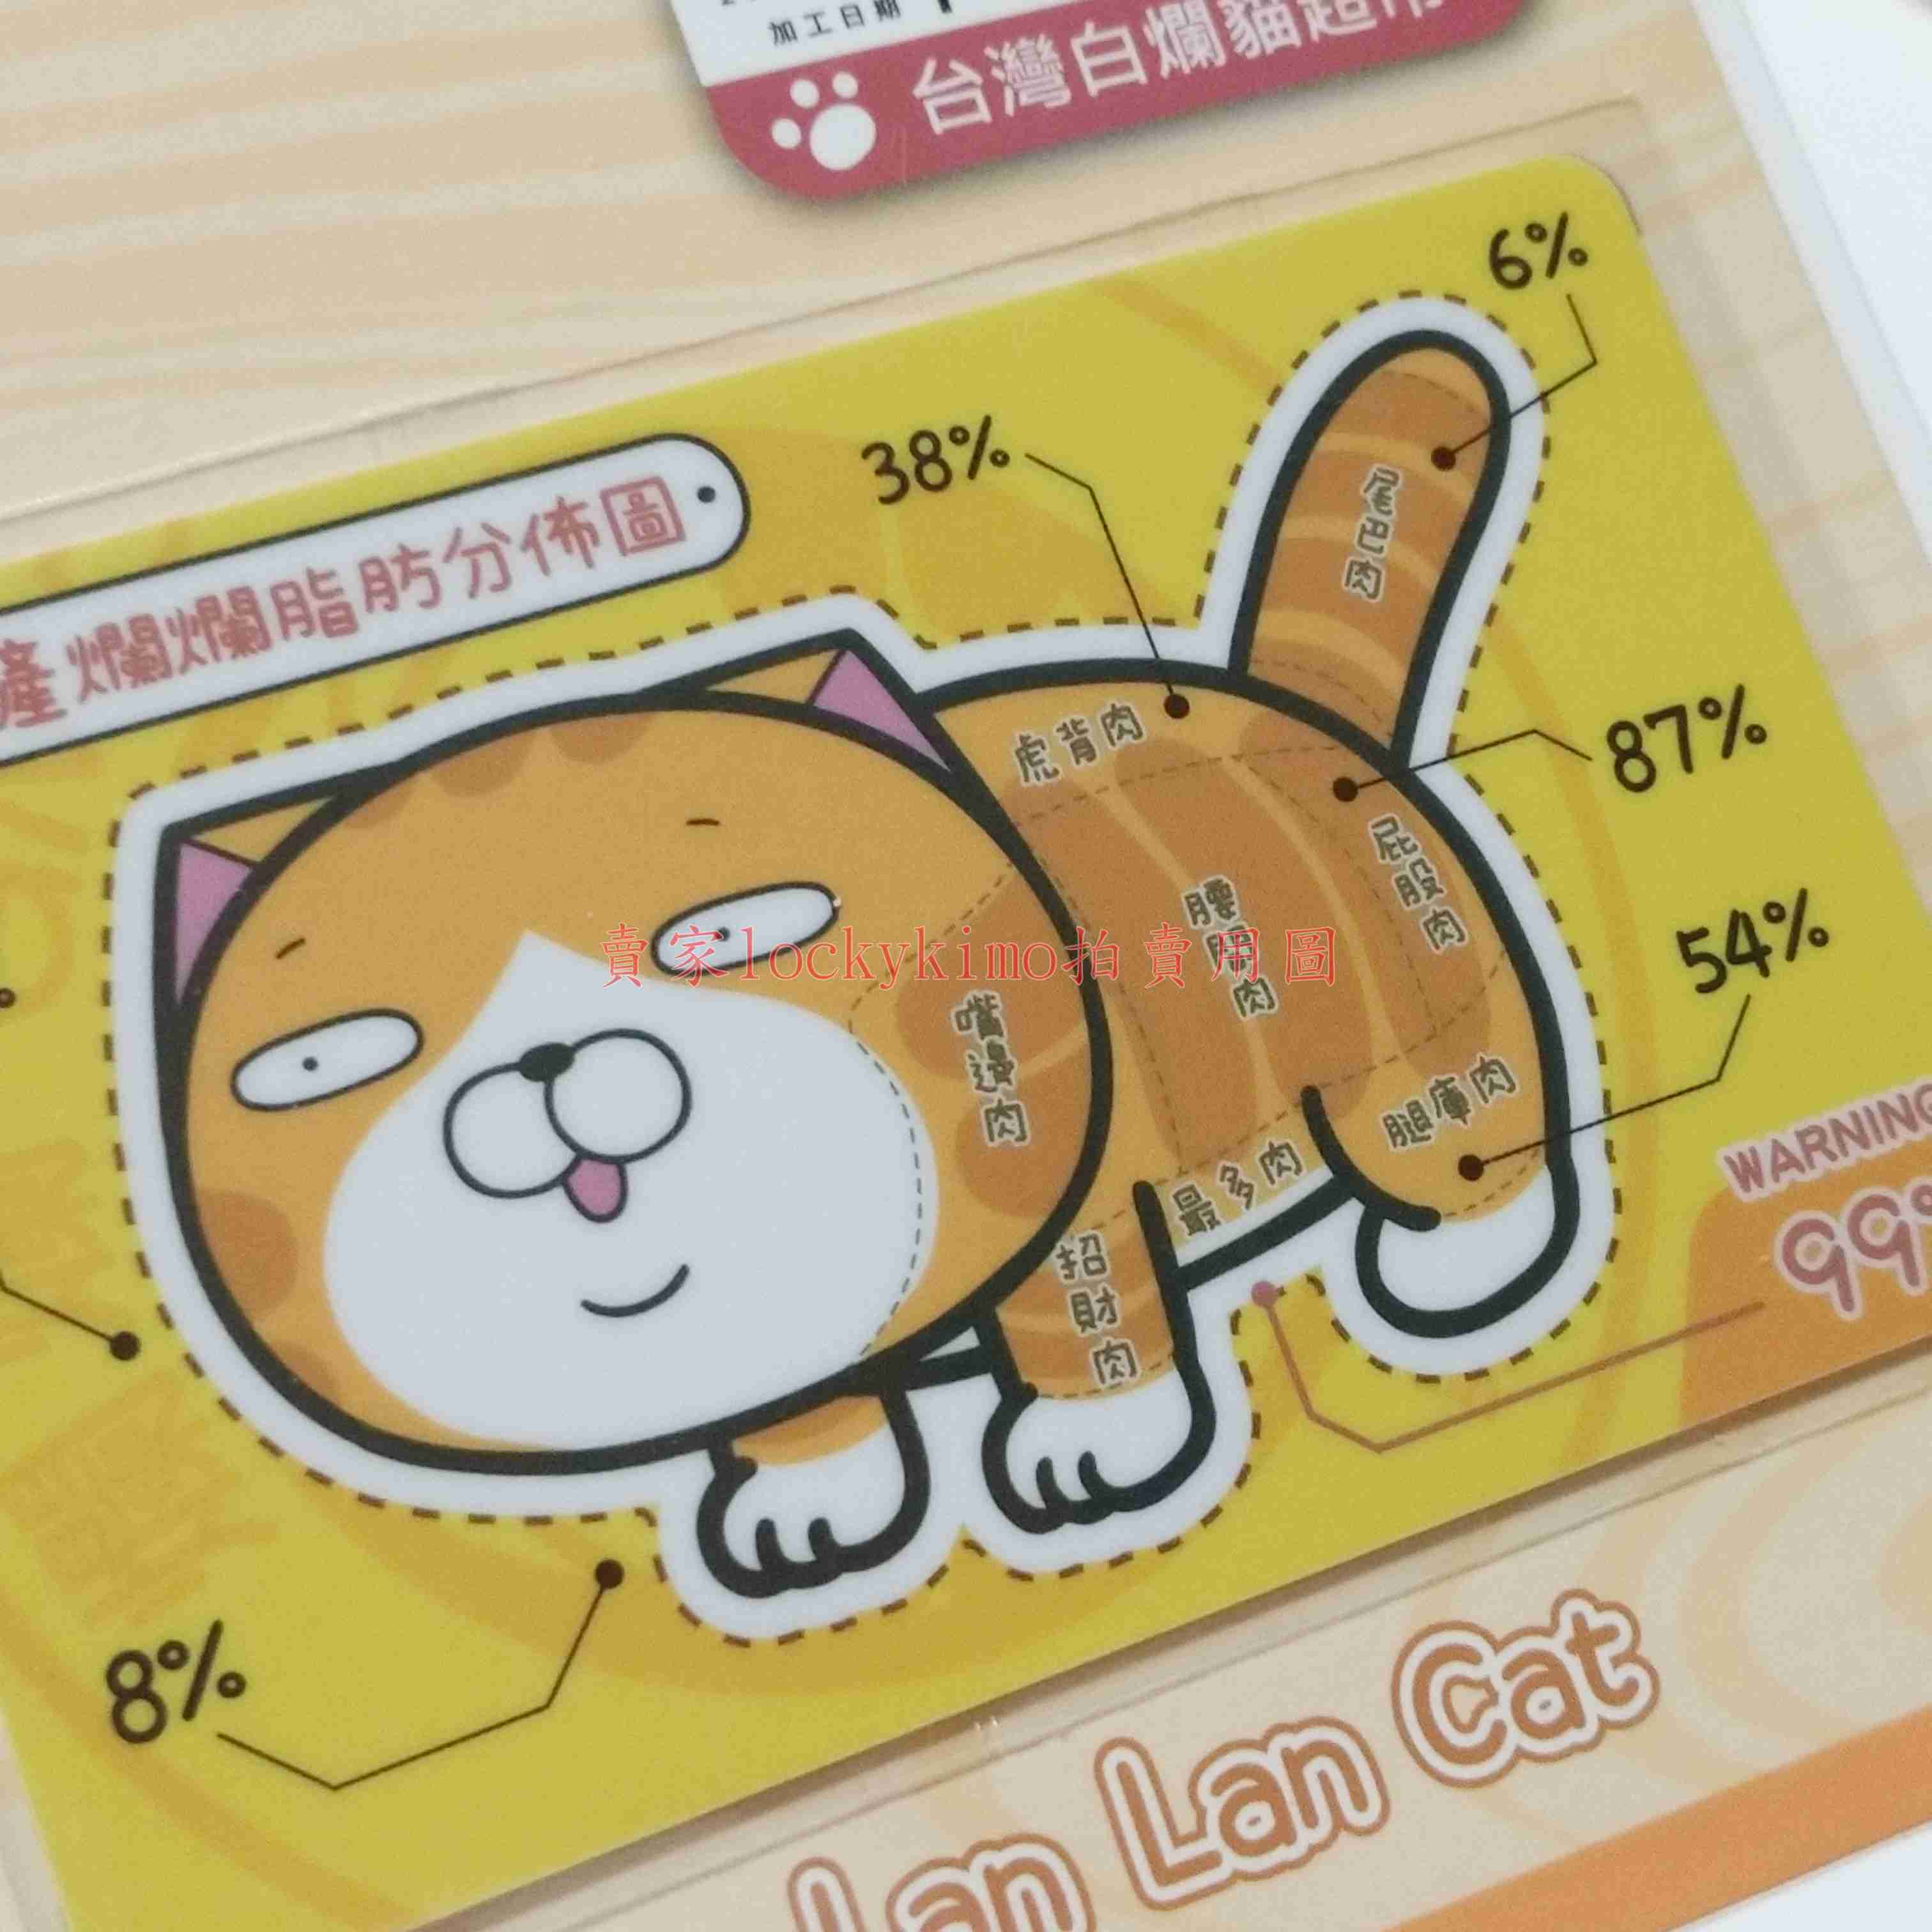 【白爛貓 icash 2.0 空卡 脂肪分佈】麻糬爸 收藏卡 珍藏卡 卡片 愛金卡 爛爛 Lan Lan Cat 貓咪